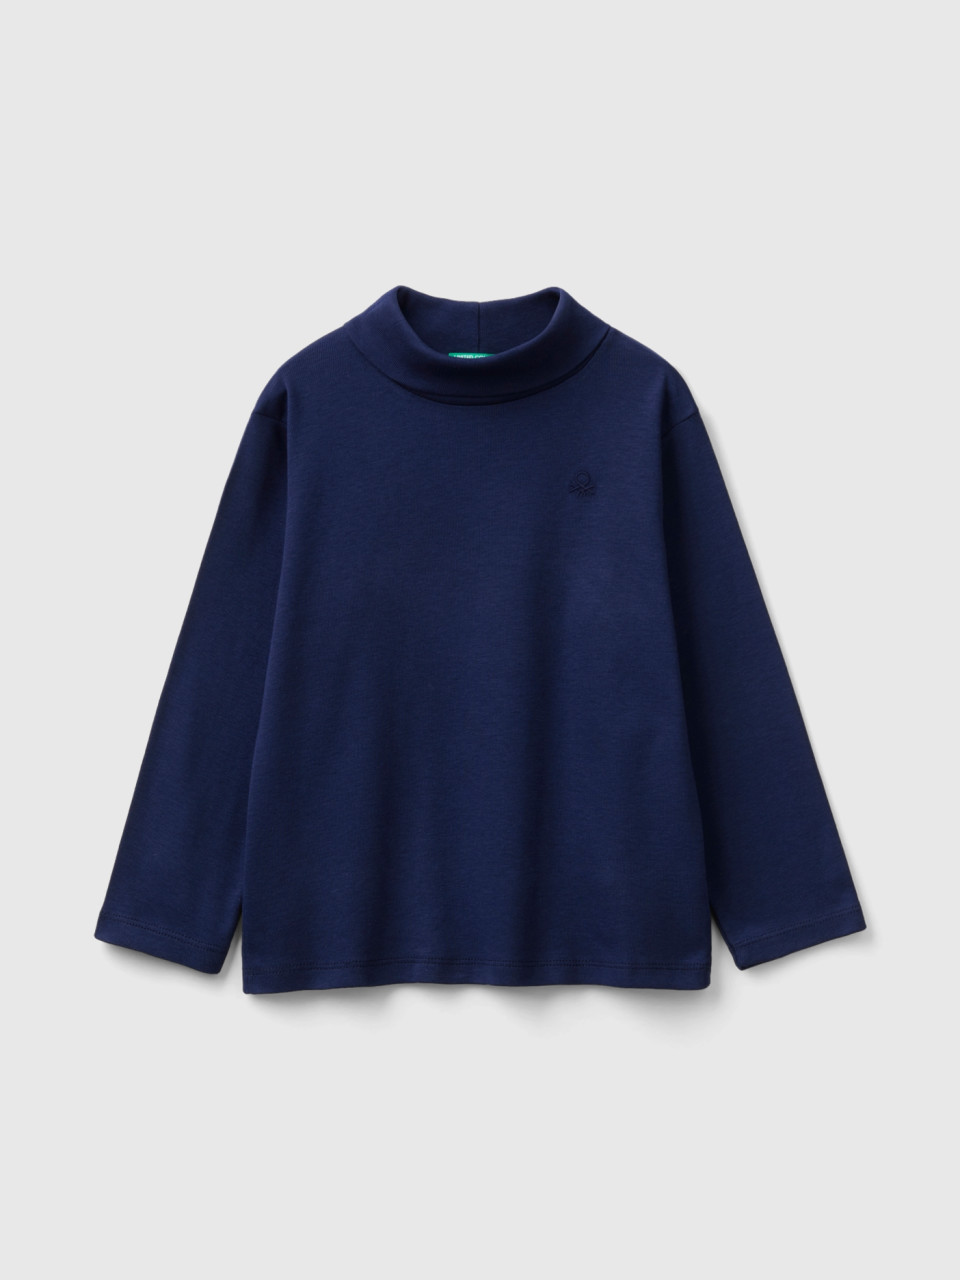 Benetton, Turtleneck T-shirt In Warm Organic Cotton, Dark Blue, Kids